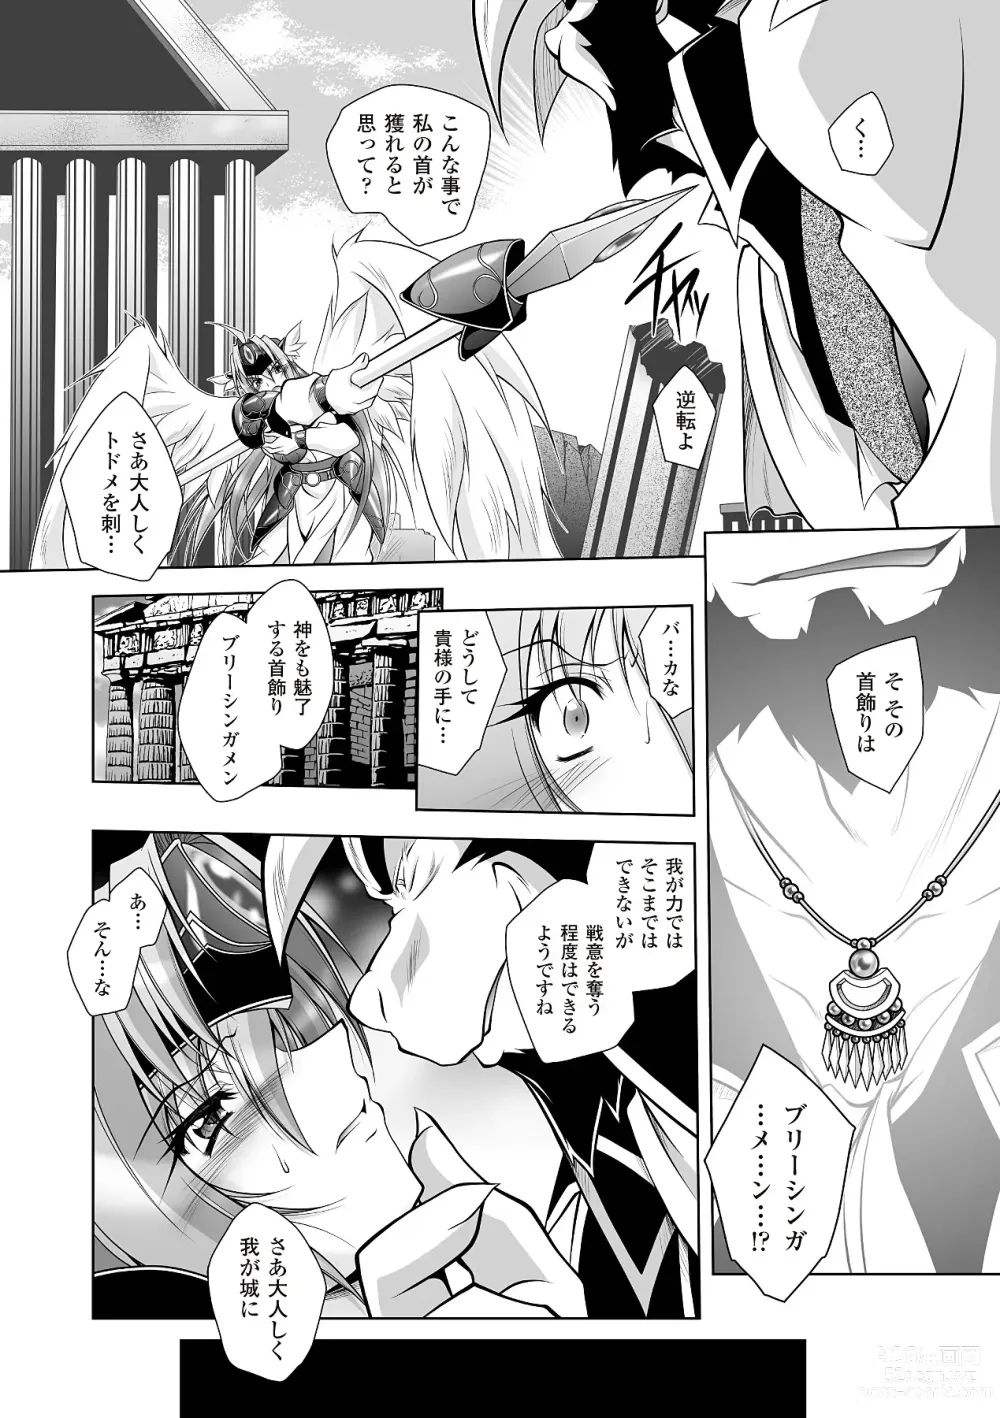 Page 10 of manga Datenshi-tachi no Rhapsody - Fallen Angels Rhapsody